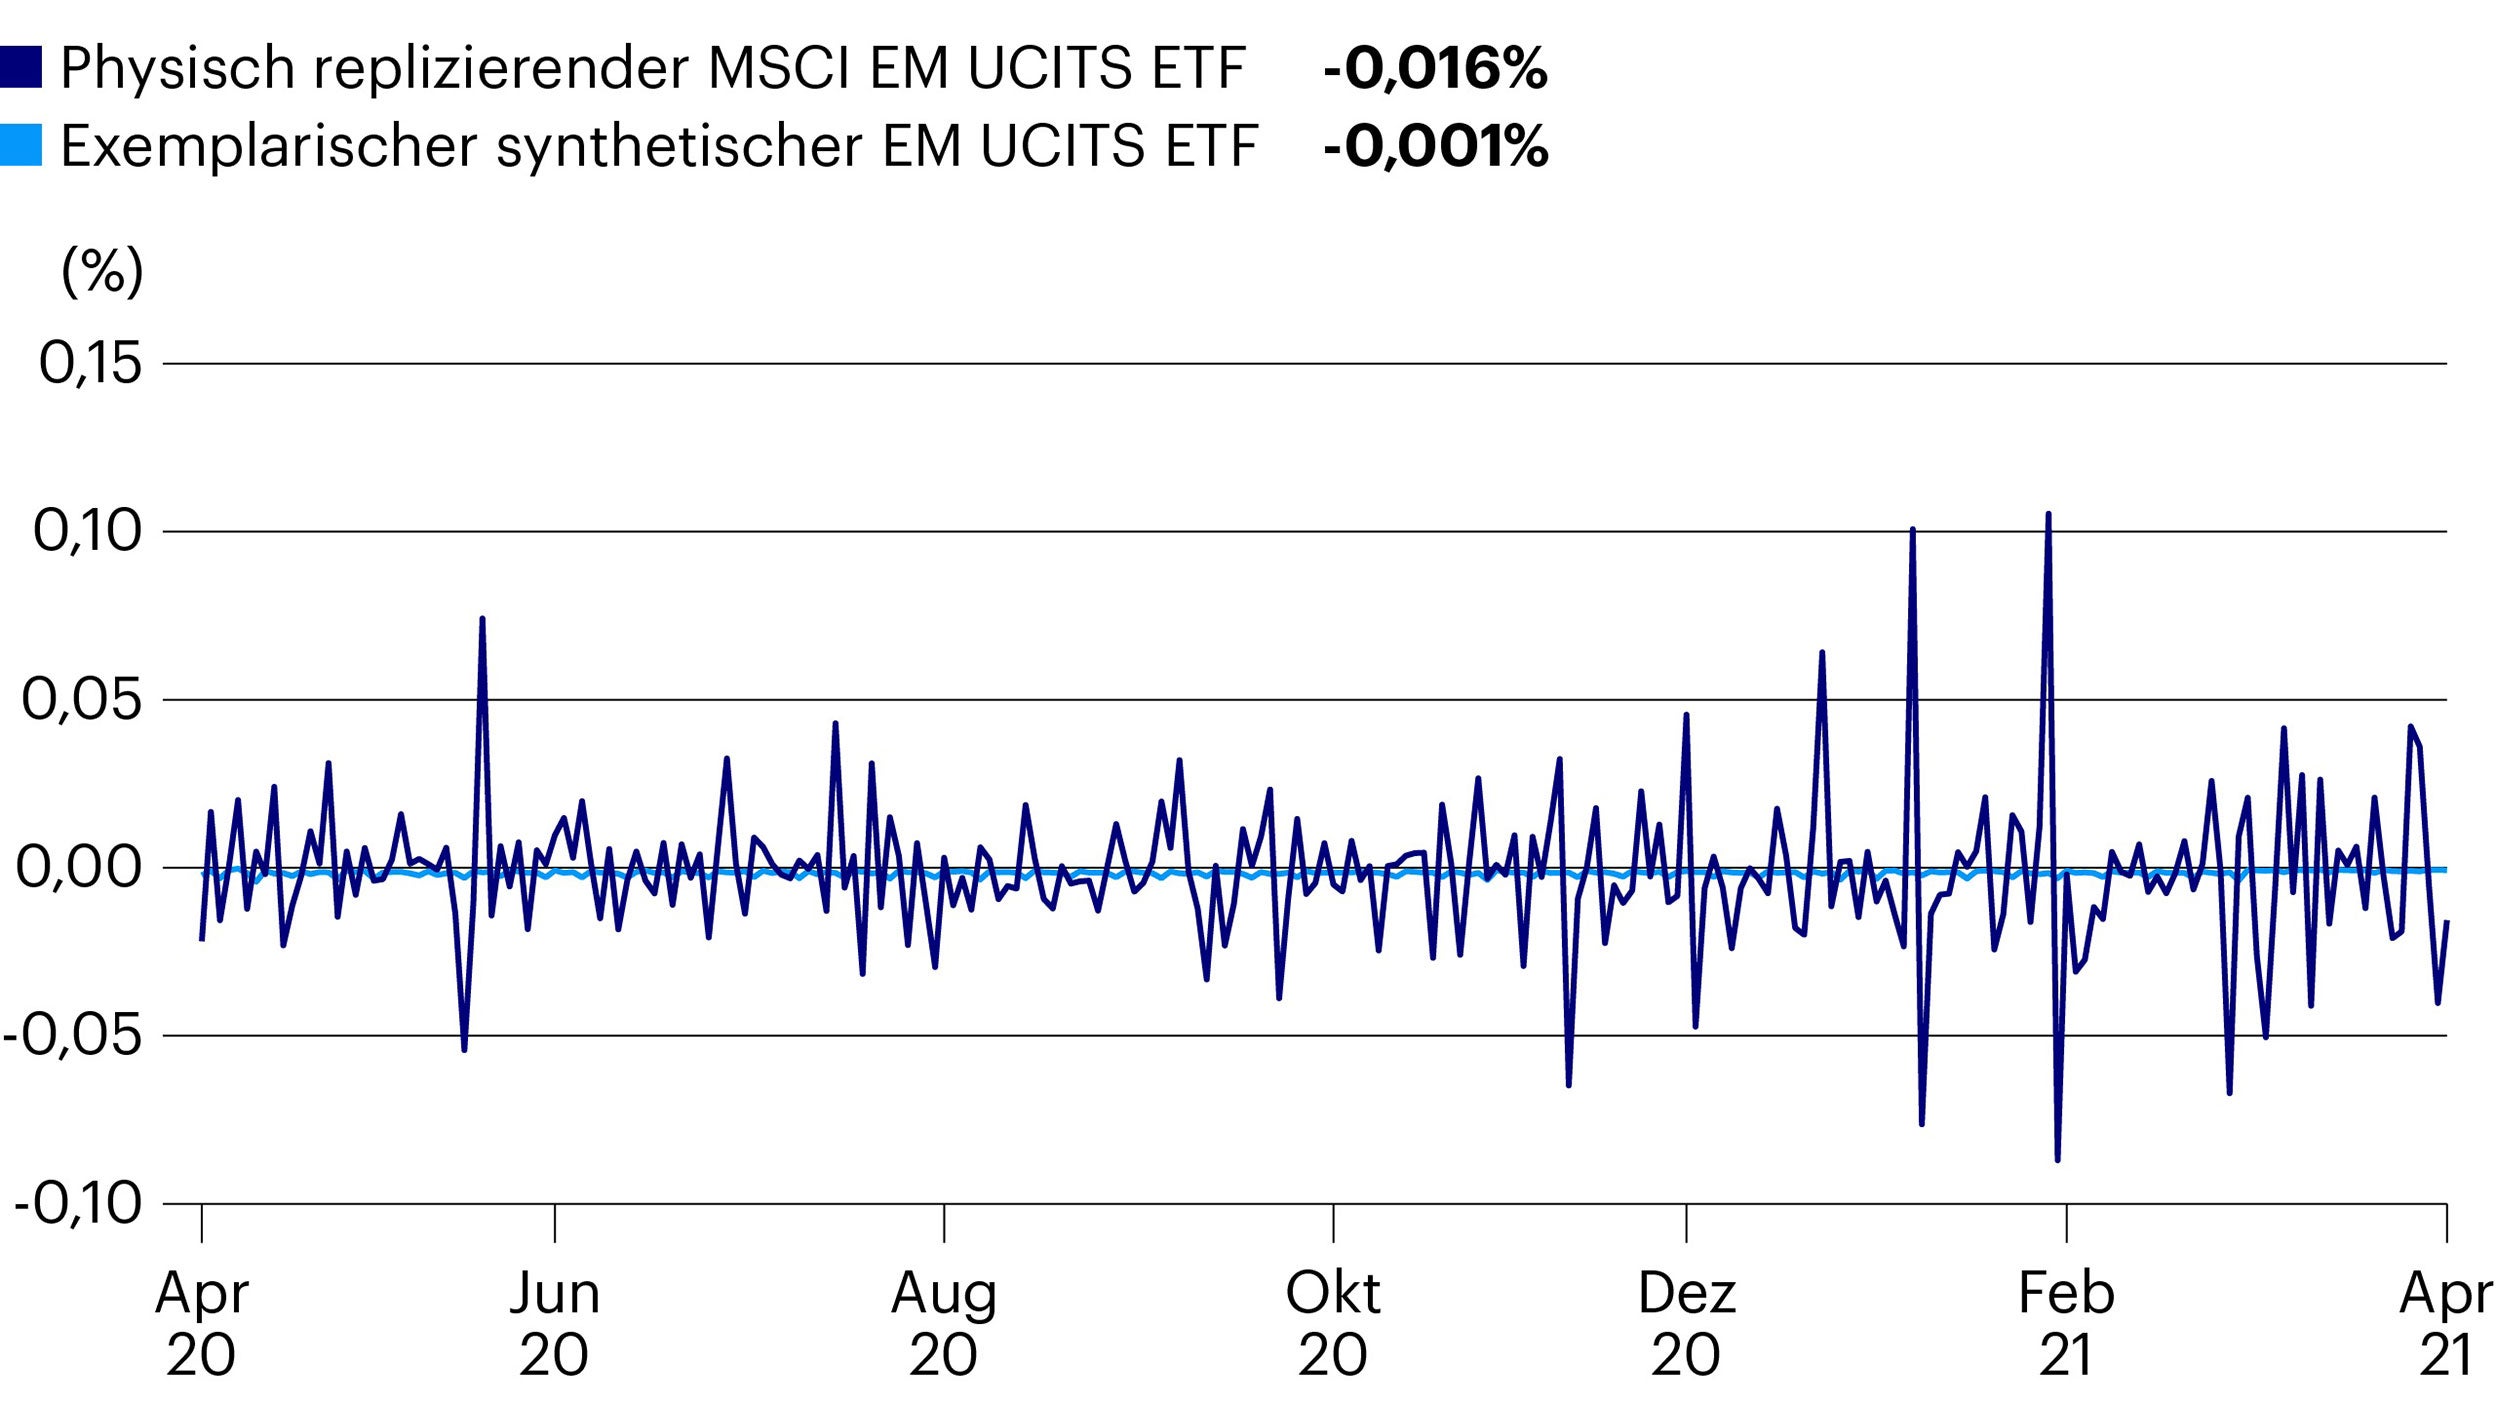 Tracking Error: Der grösste physisch replizierende EM UCITS ETF ggü. einem exemplarischen synthetischen EM UCITS ETF